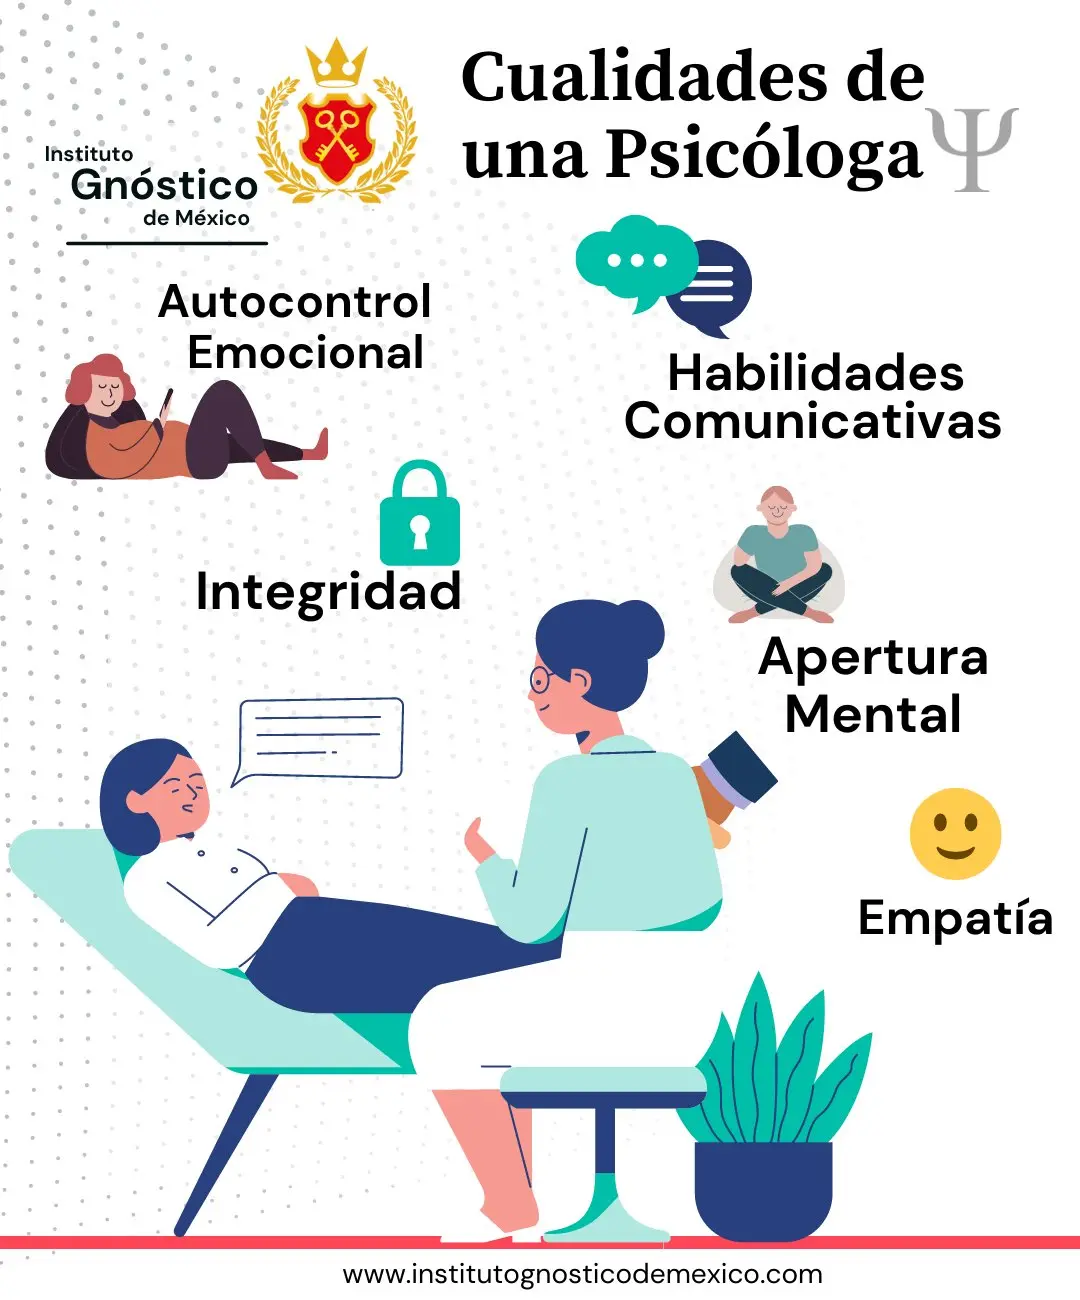 habilidades de un psicologo - Cuáles son las habilidades blandas de un psicólogo